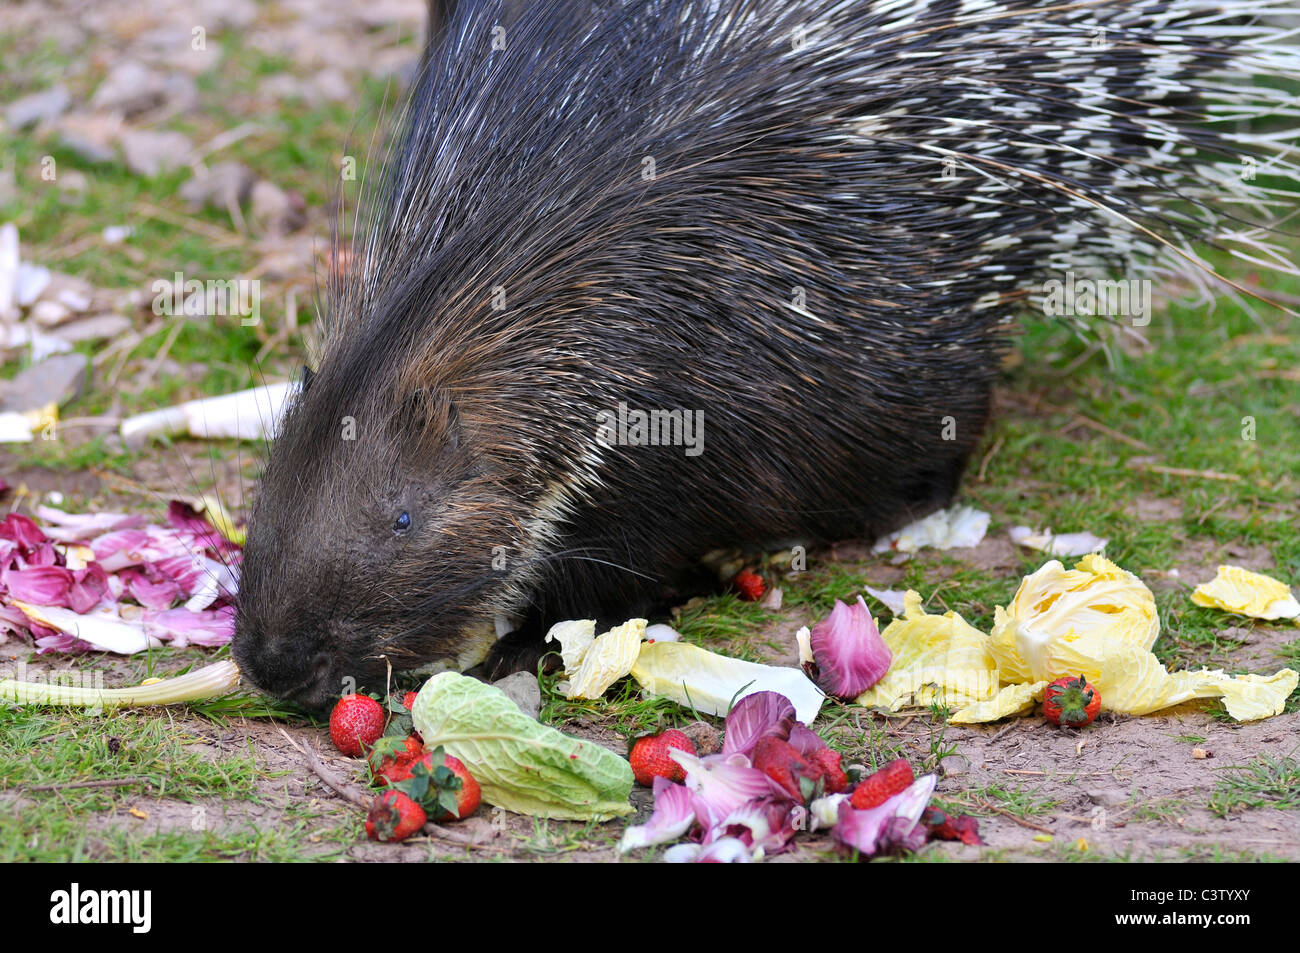 Porc-épic Indiens gros plan (Hystrix indica) manger des légumes Banque D'Images